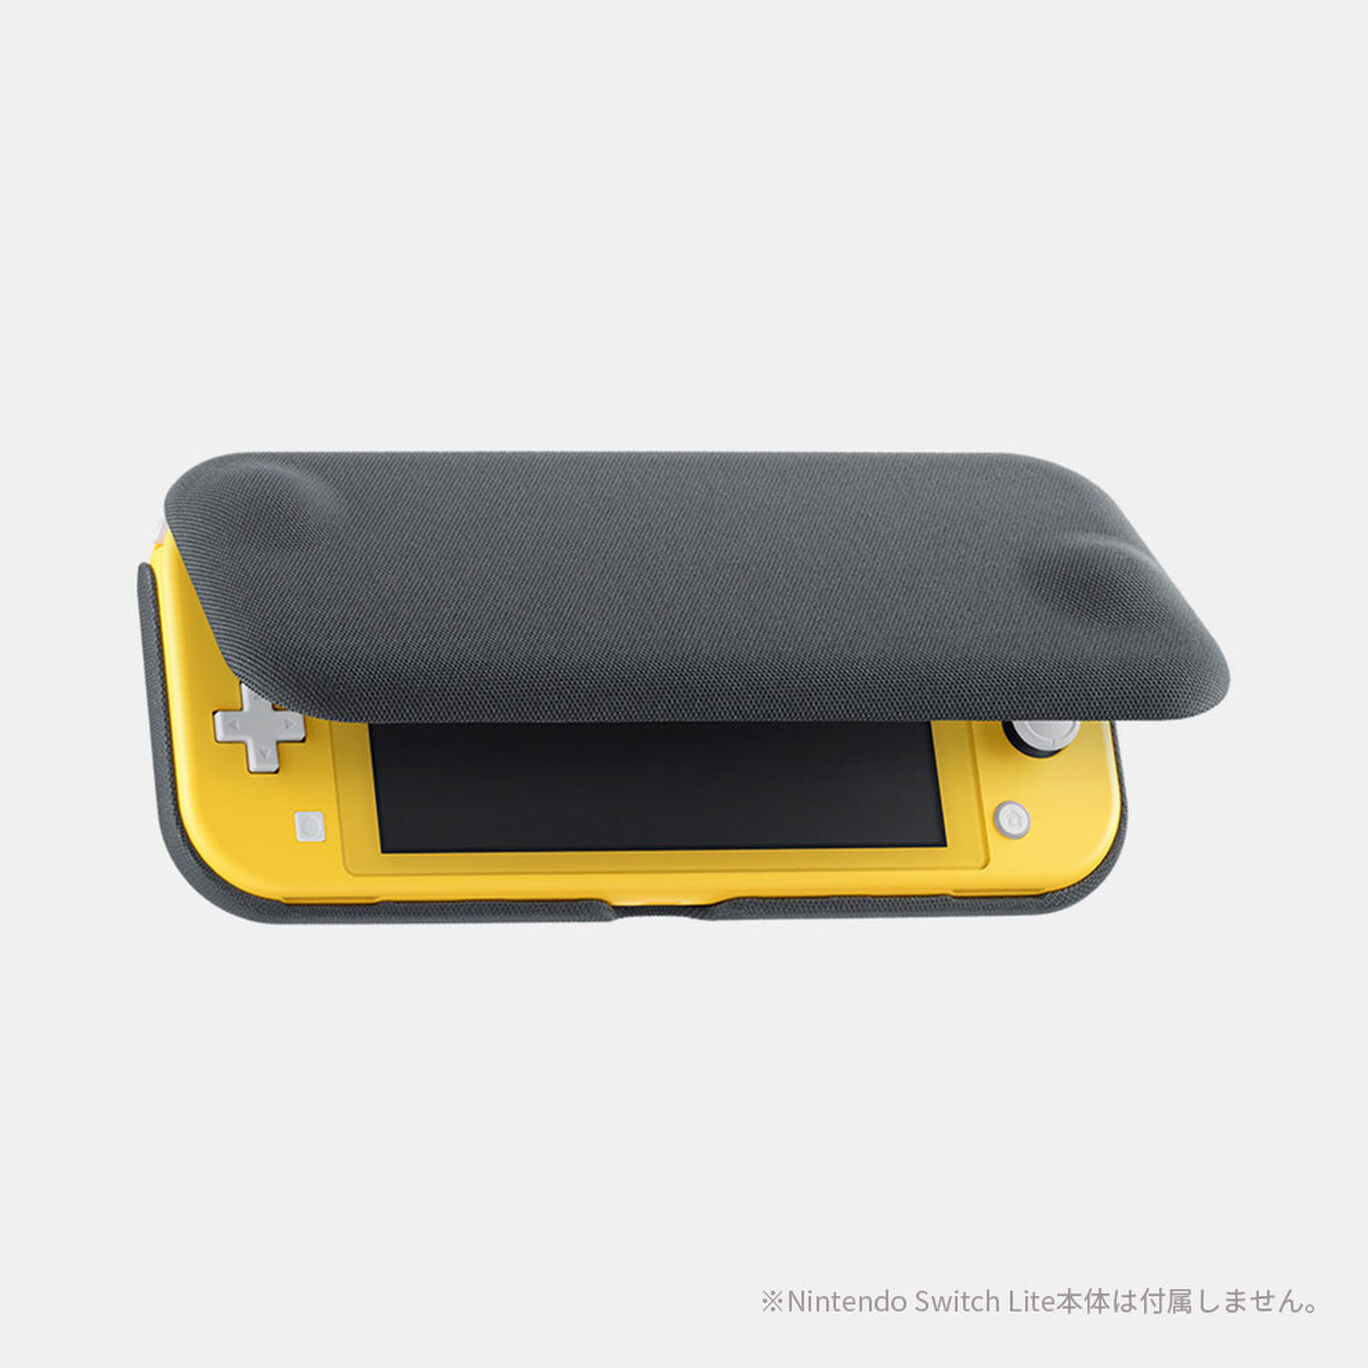 Nintendo Switch Liteフリップカバー 画面保護シート付き My Nintendo Store マイニンテンドーストア